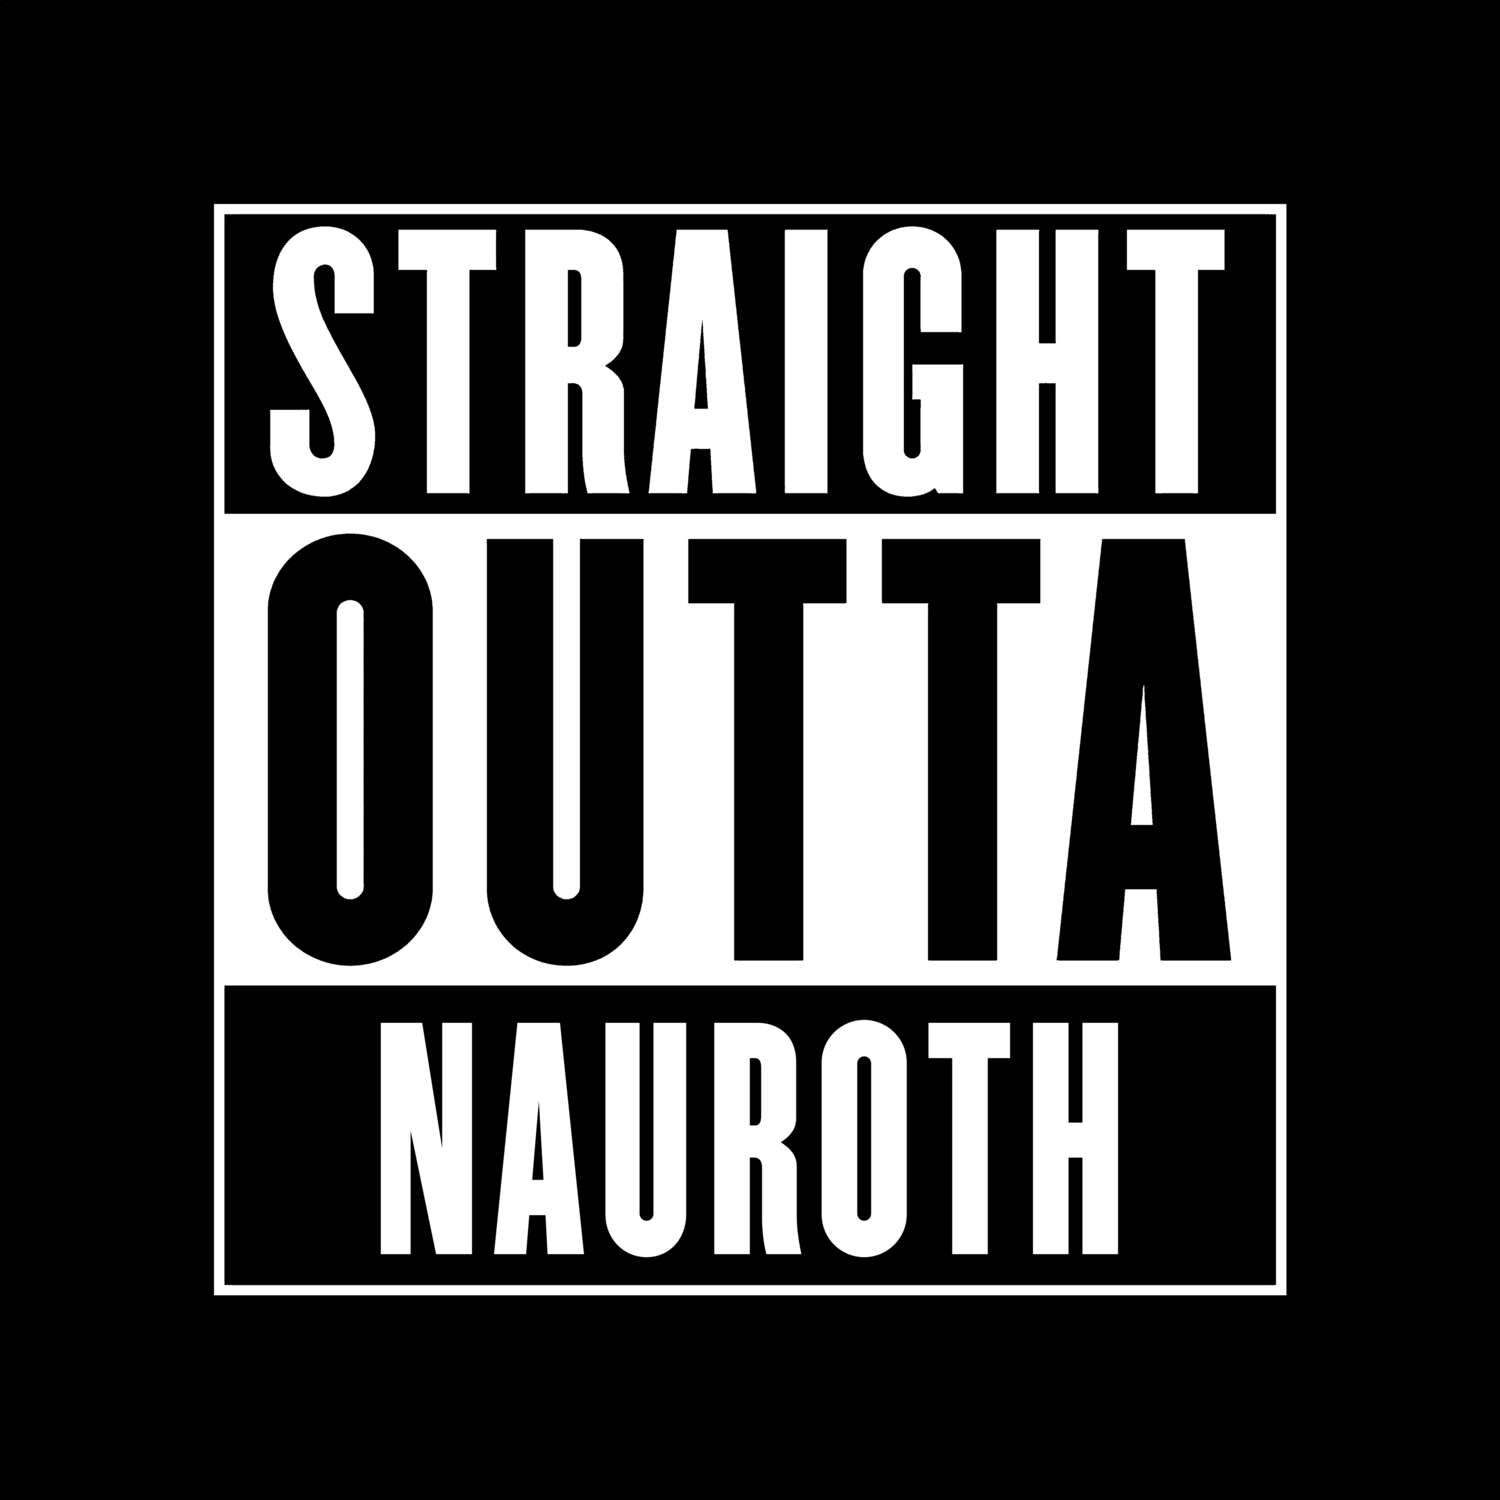 Nauroth T-Shirt »Straight Outta«